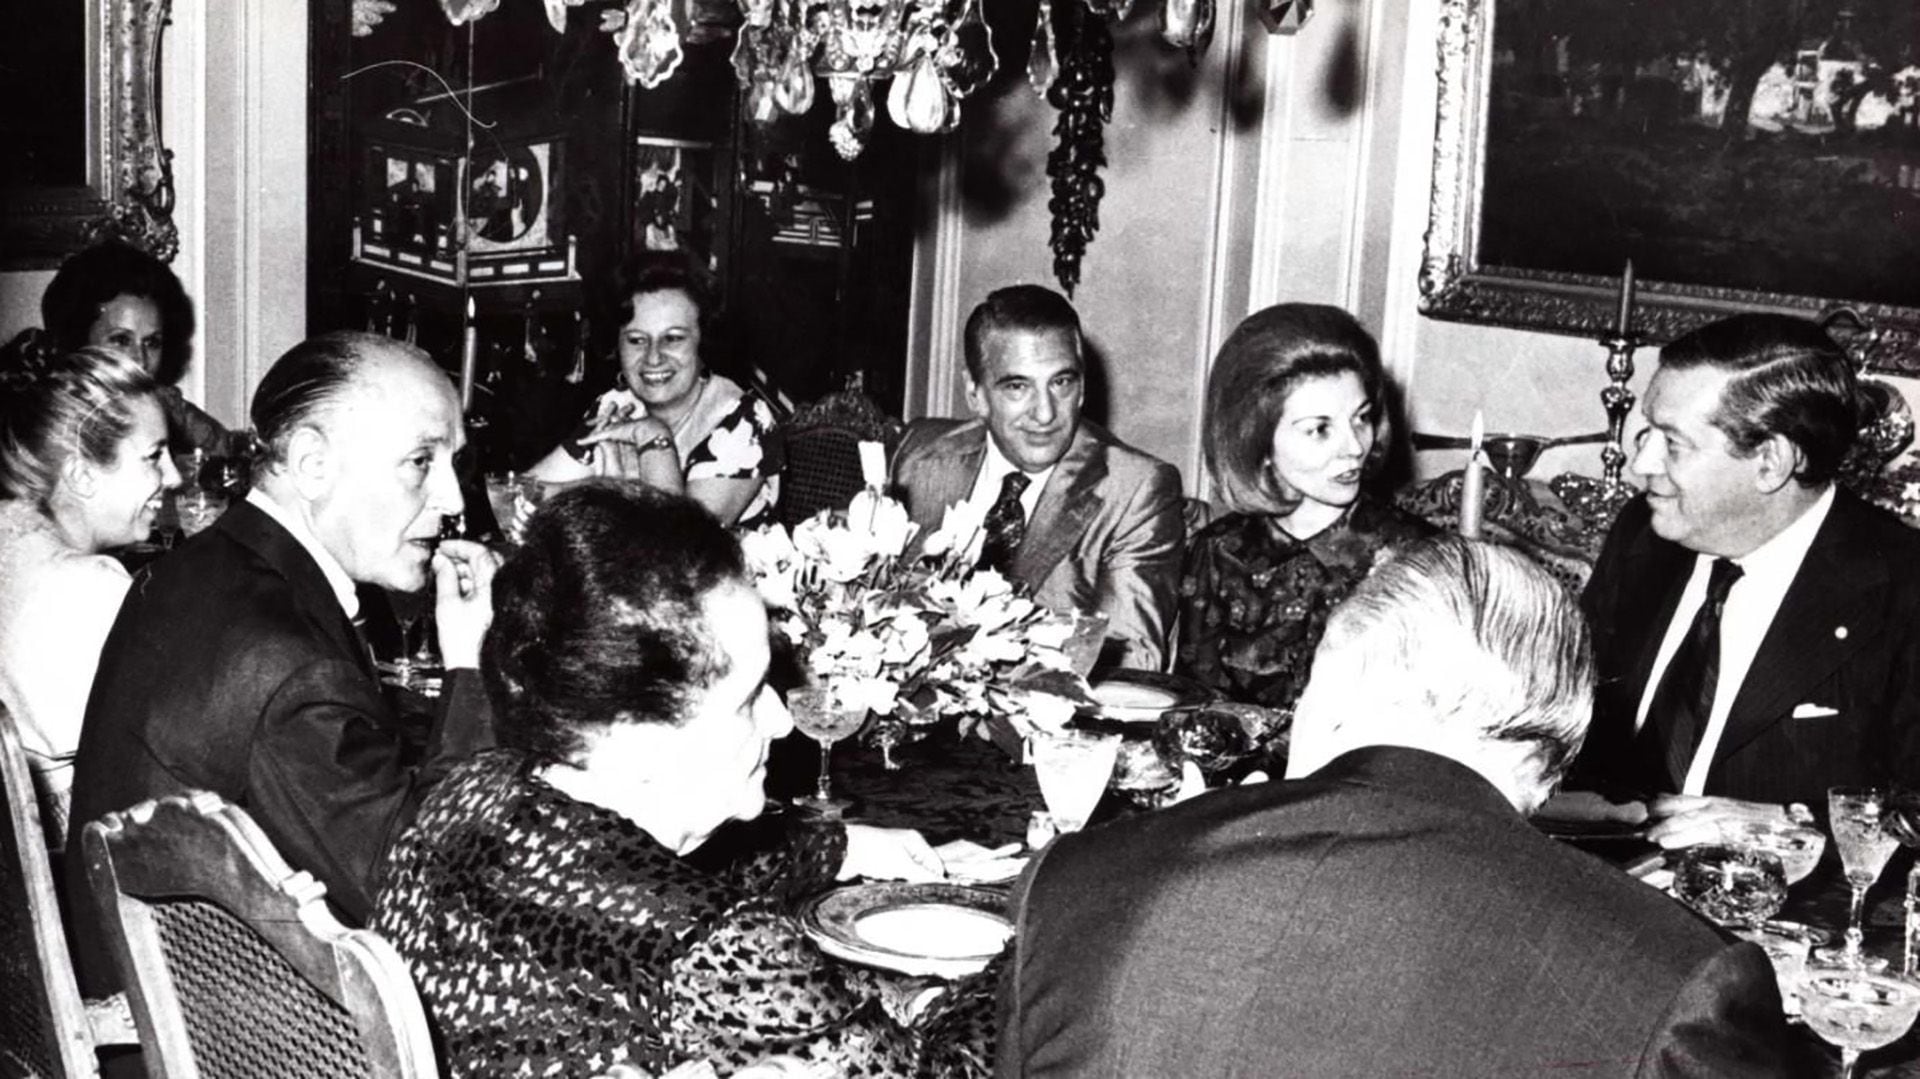 14 de octubre de 1973: comida de los Llambí en su departamento. En la foto se observa a Isabel Martínez de Perón, el matrimonio Gelbard, el matrimonio Lastiri, María del Pilar Franco Bahamonde y José López Rega